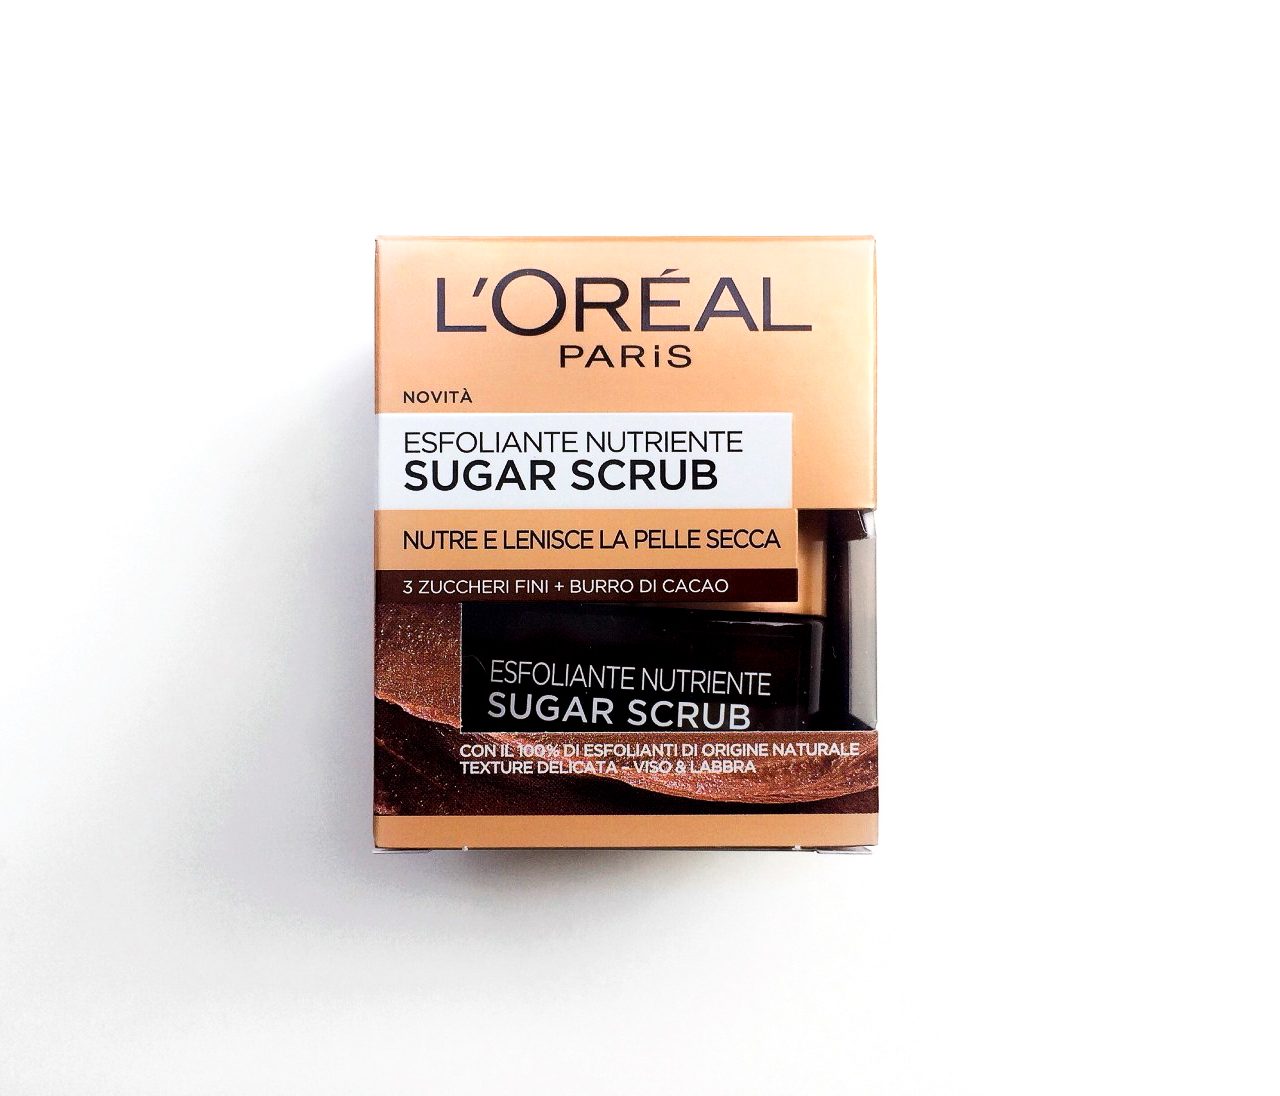 L’Oreal Pure Sugar Nourish & Soften Face Scrub | Review